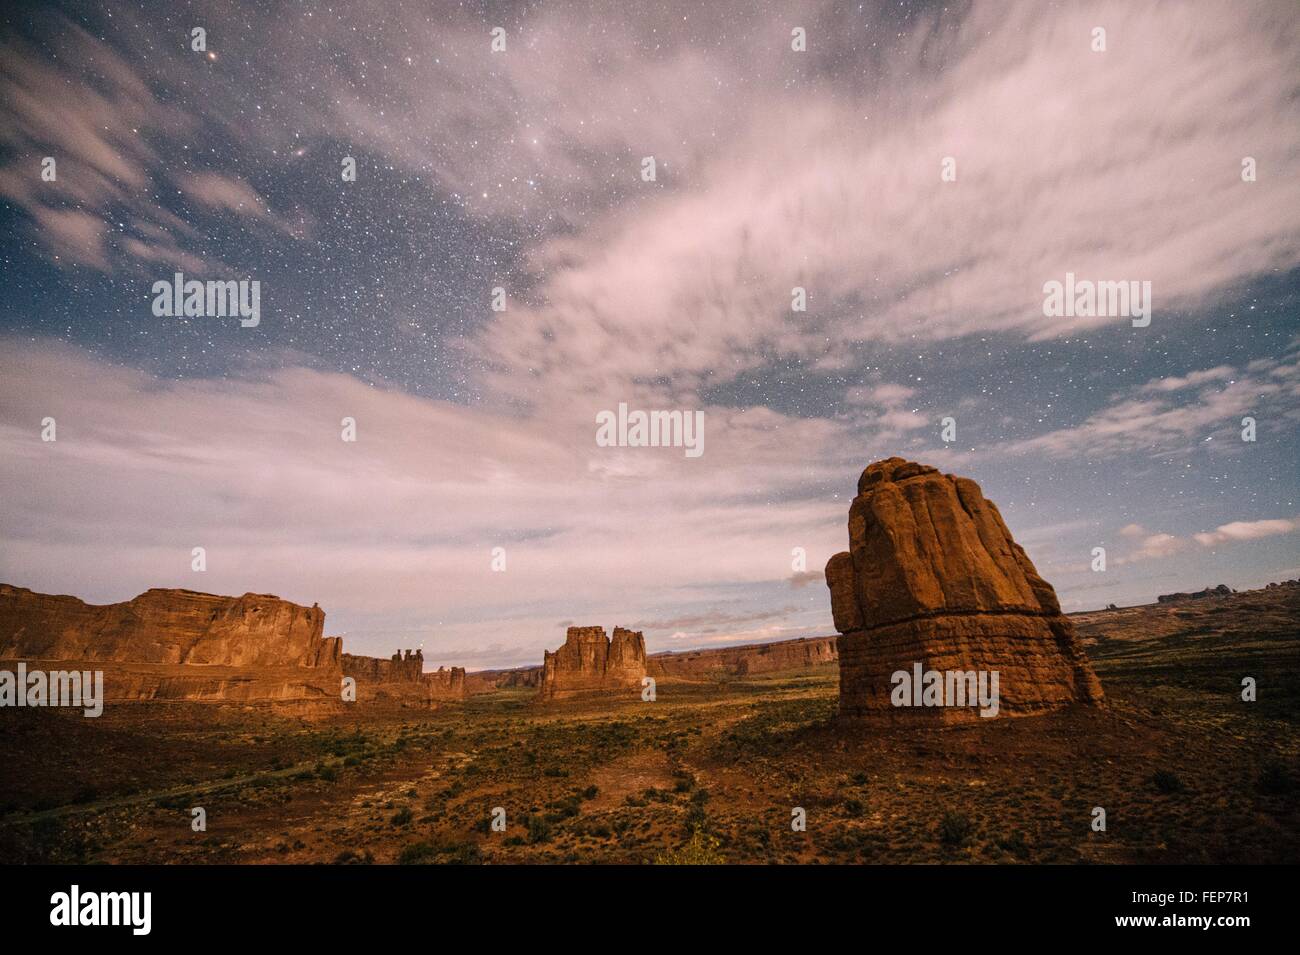 Wolken in sternenklaren Himmel und Tal Felsformationen bei Nacht, Moab, Utah, USA Stockfoto